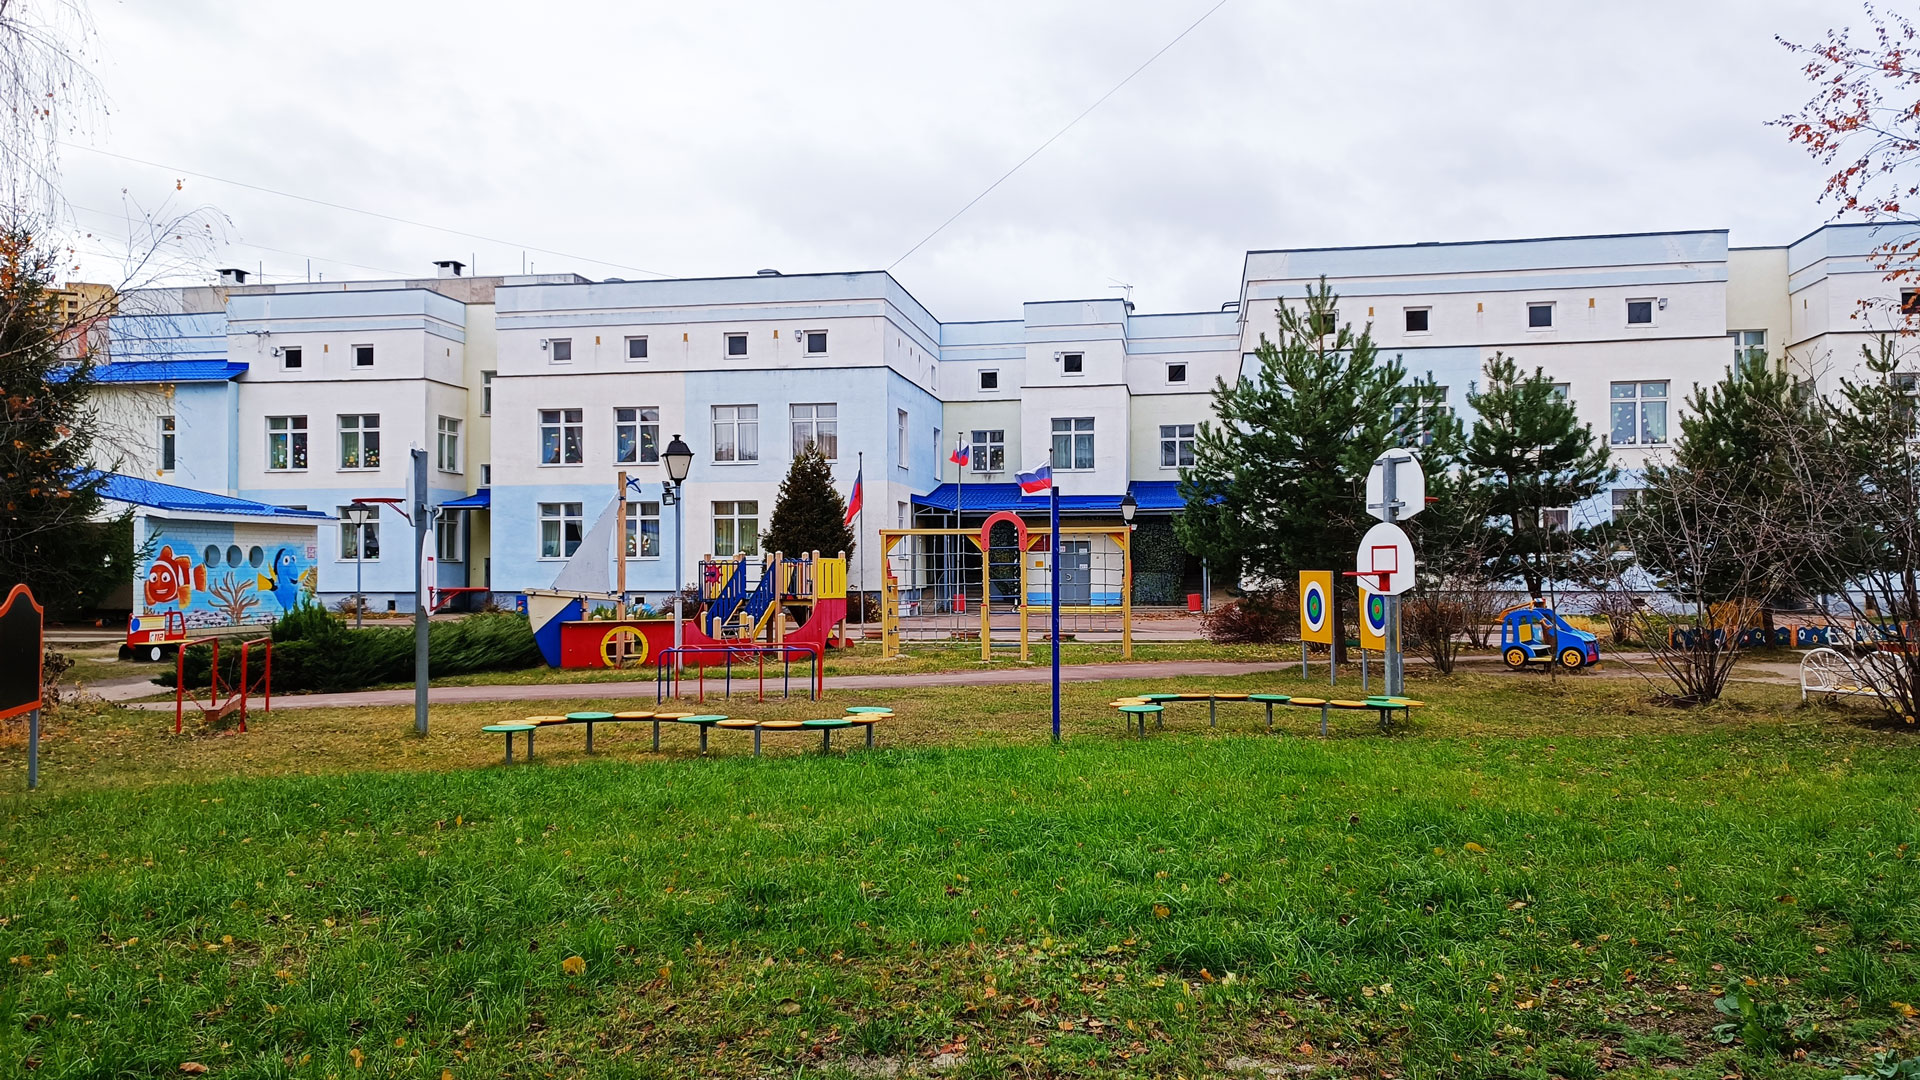 Детский сад 100 Ярославль: главный вход в здание садика.